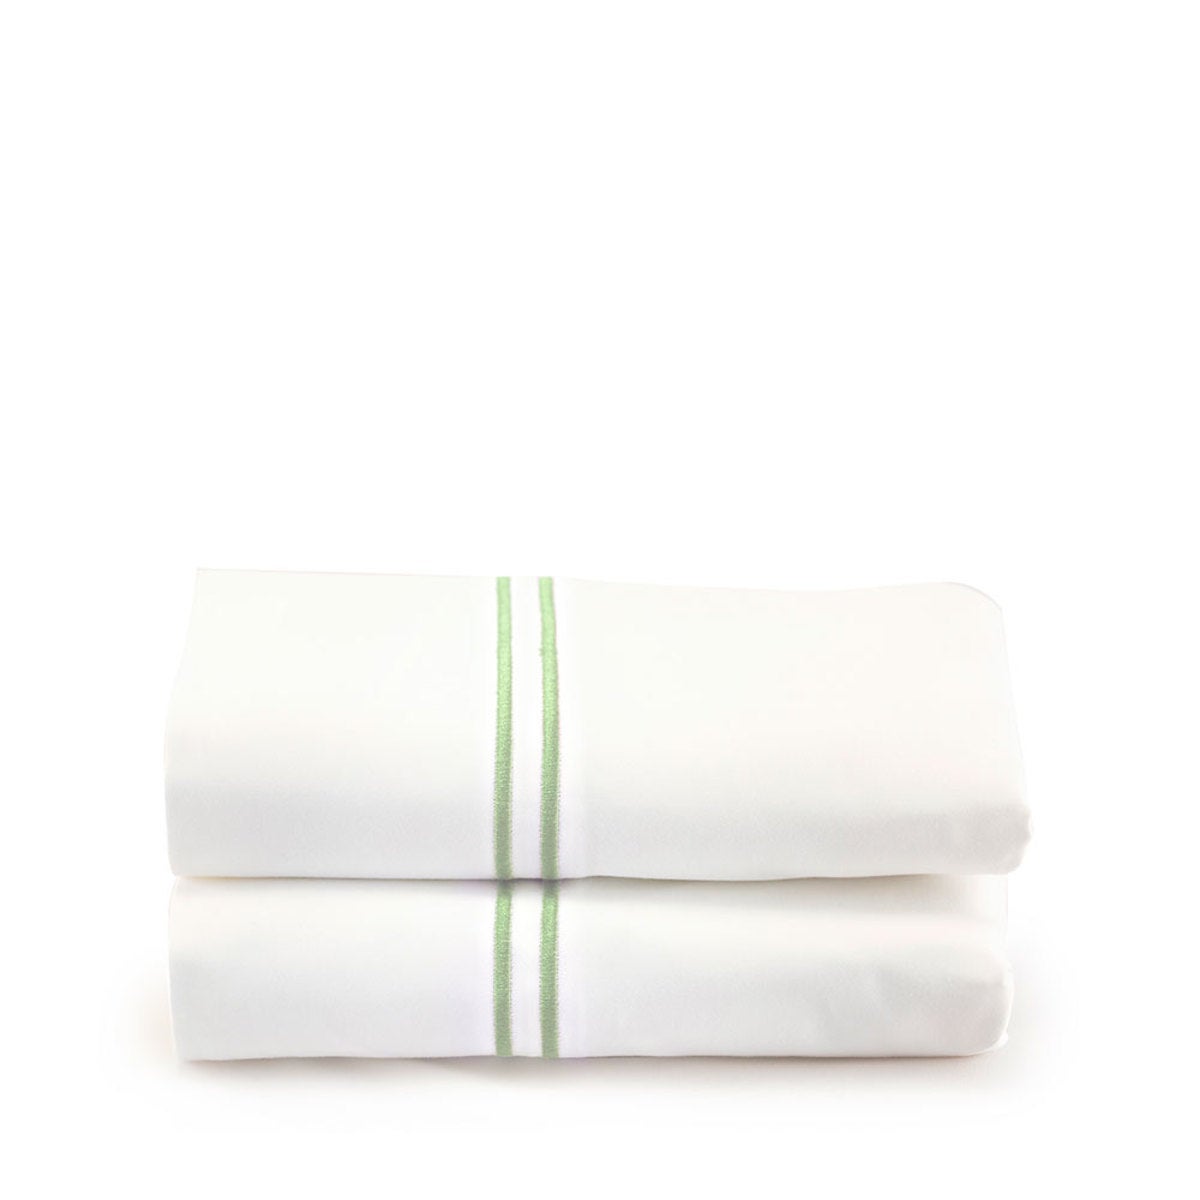 500 Thread Count Sateen Satin Stitch Standard Pillowcases - Set of 2 - White - White, Aloe